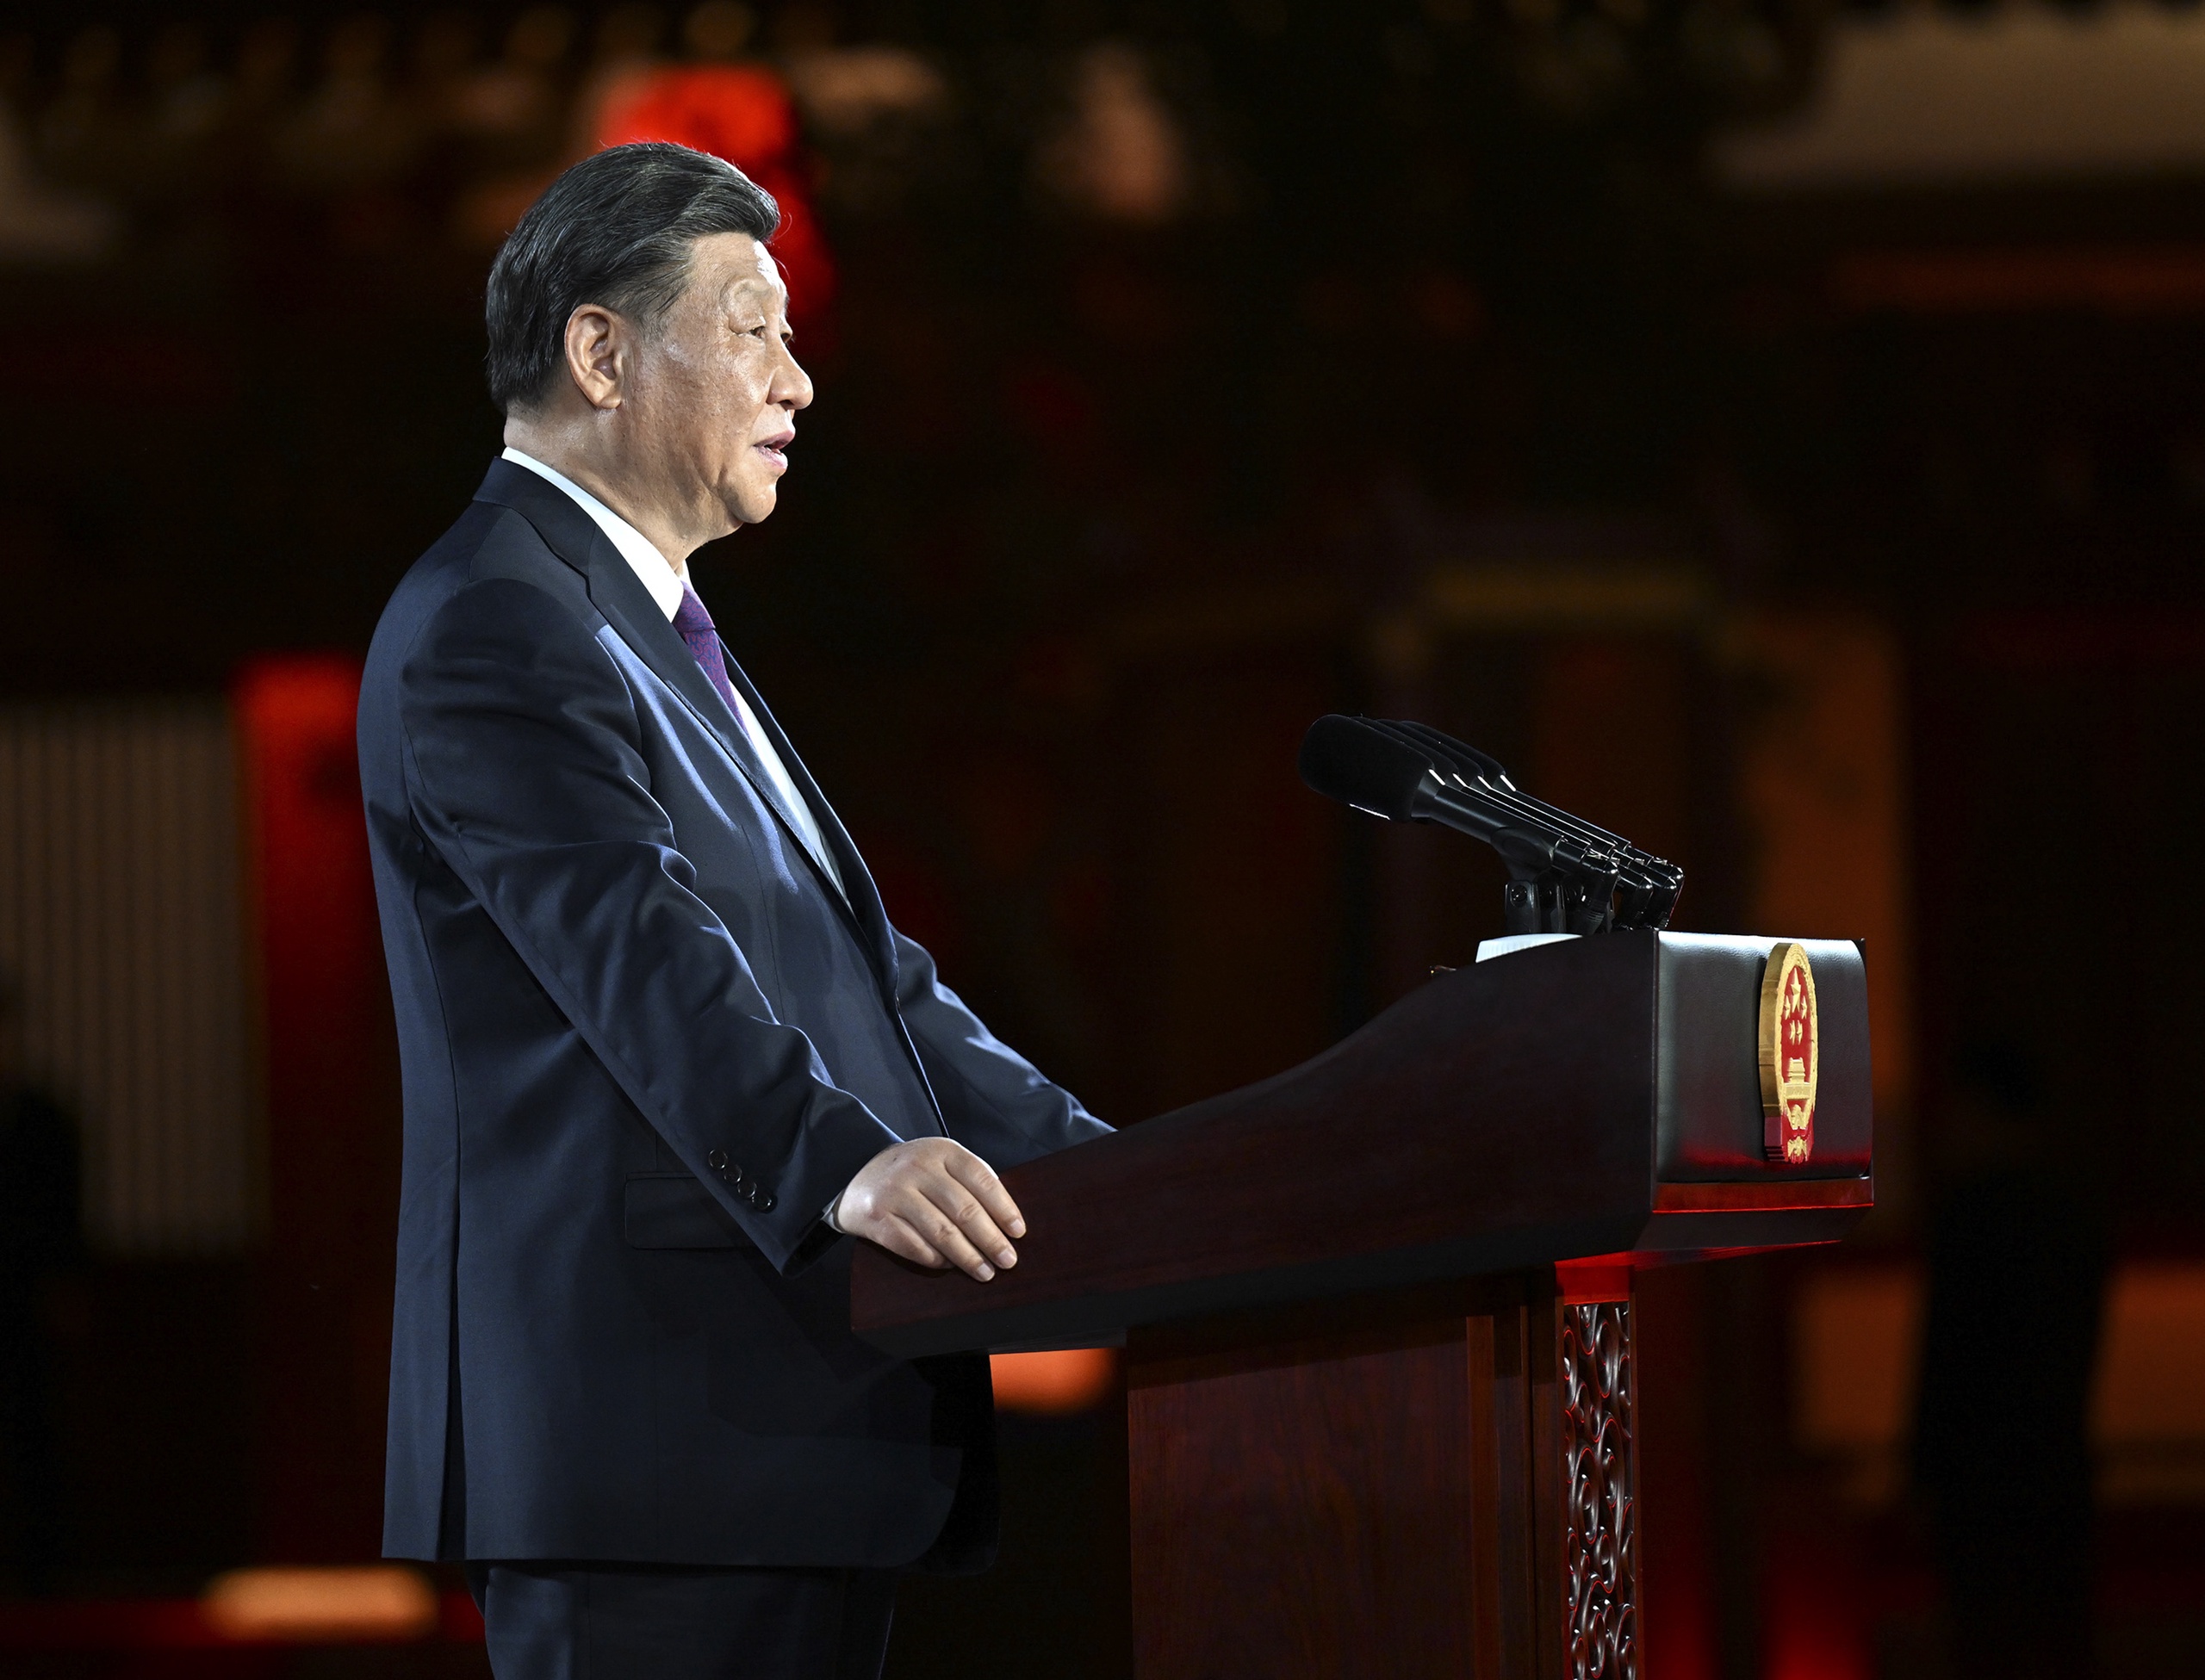 De Chinese leider Xi Jinping heeft een top afgetrapt in de centraal-Chinese stad Xi'an waarop de leiders van vijf Centraal-Aziatische landen zijn uitgenodigd. Hij noemt het in zijn openingstoespraak 'een strategische keuze' om de relatie met Kazachstan, Tadzjikistan, Kirgizië, Turkmenistan en Oezbekistan verder uit te diepen.